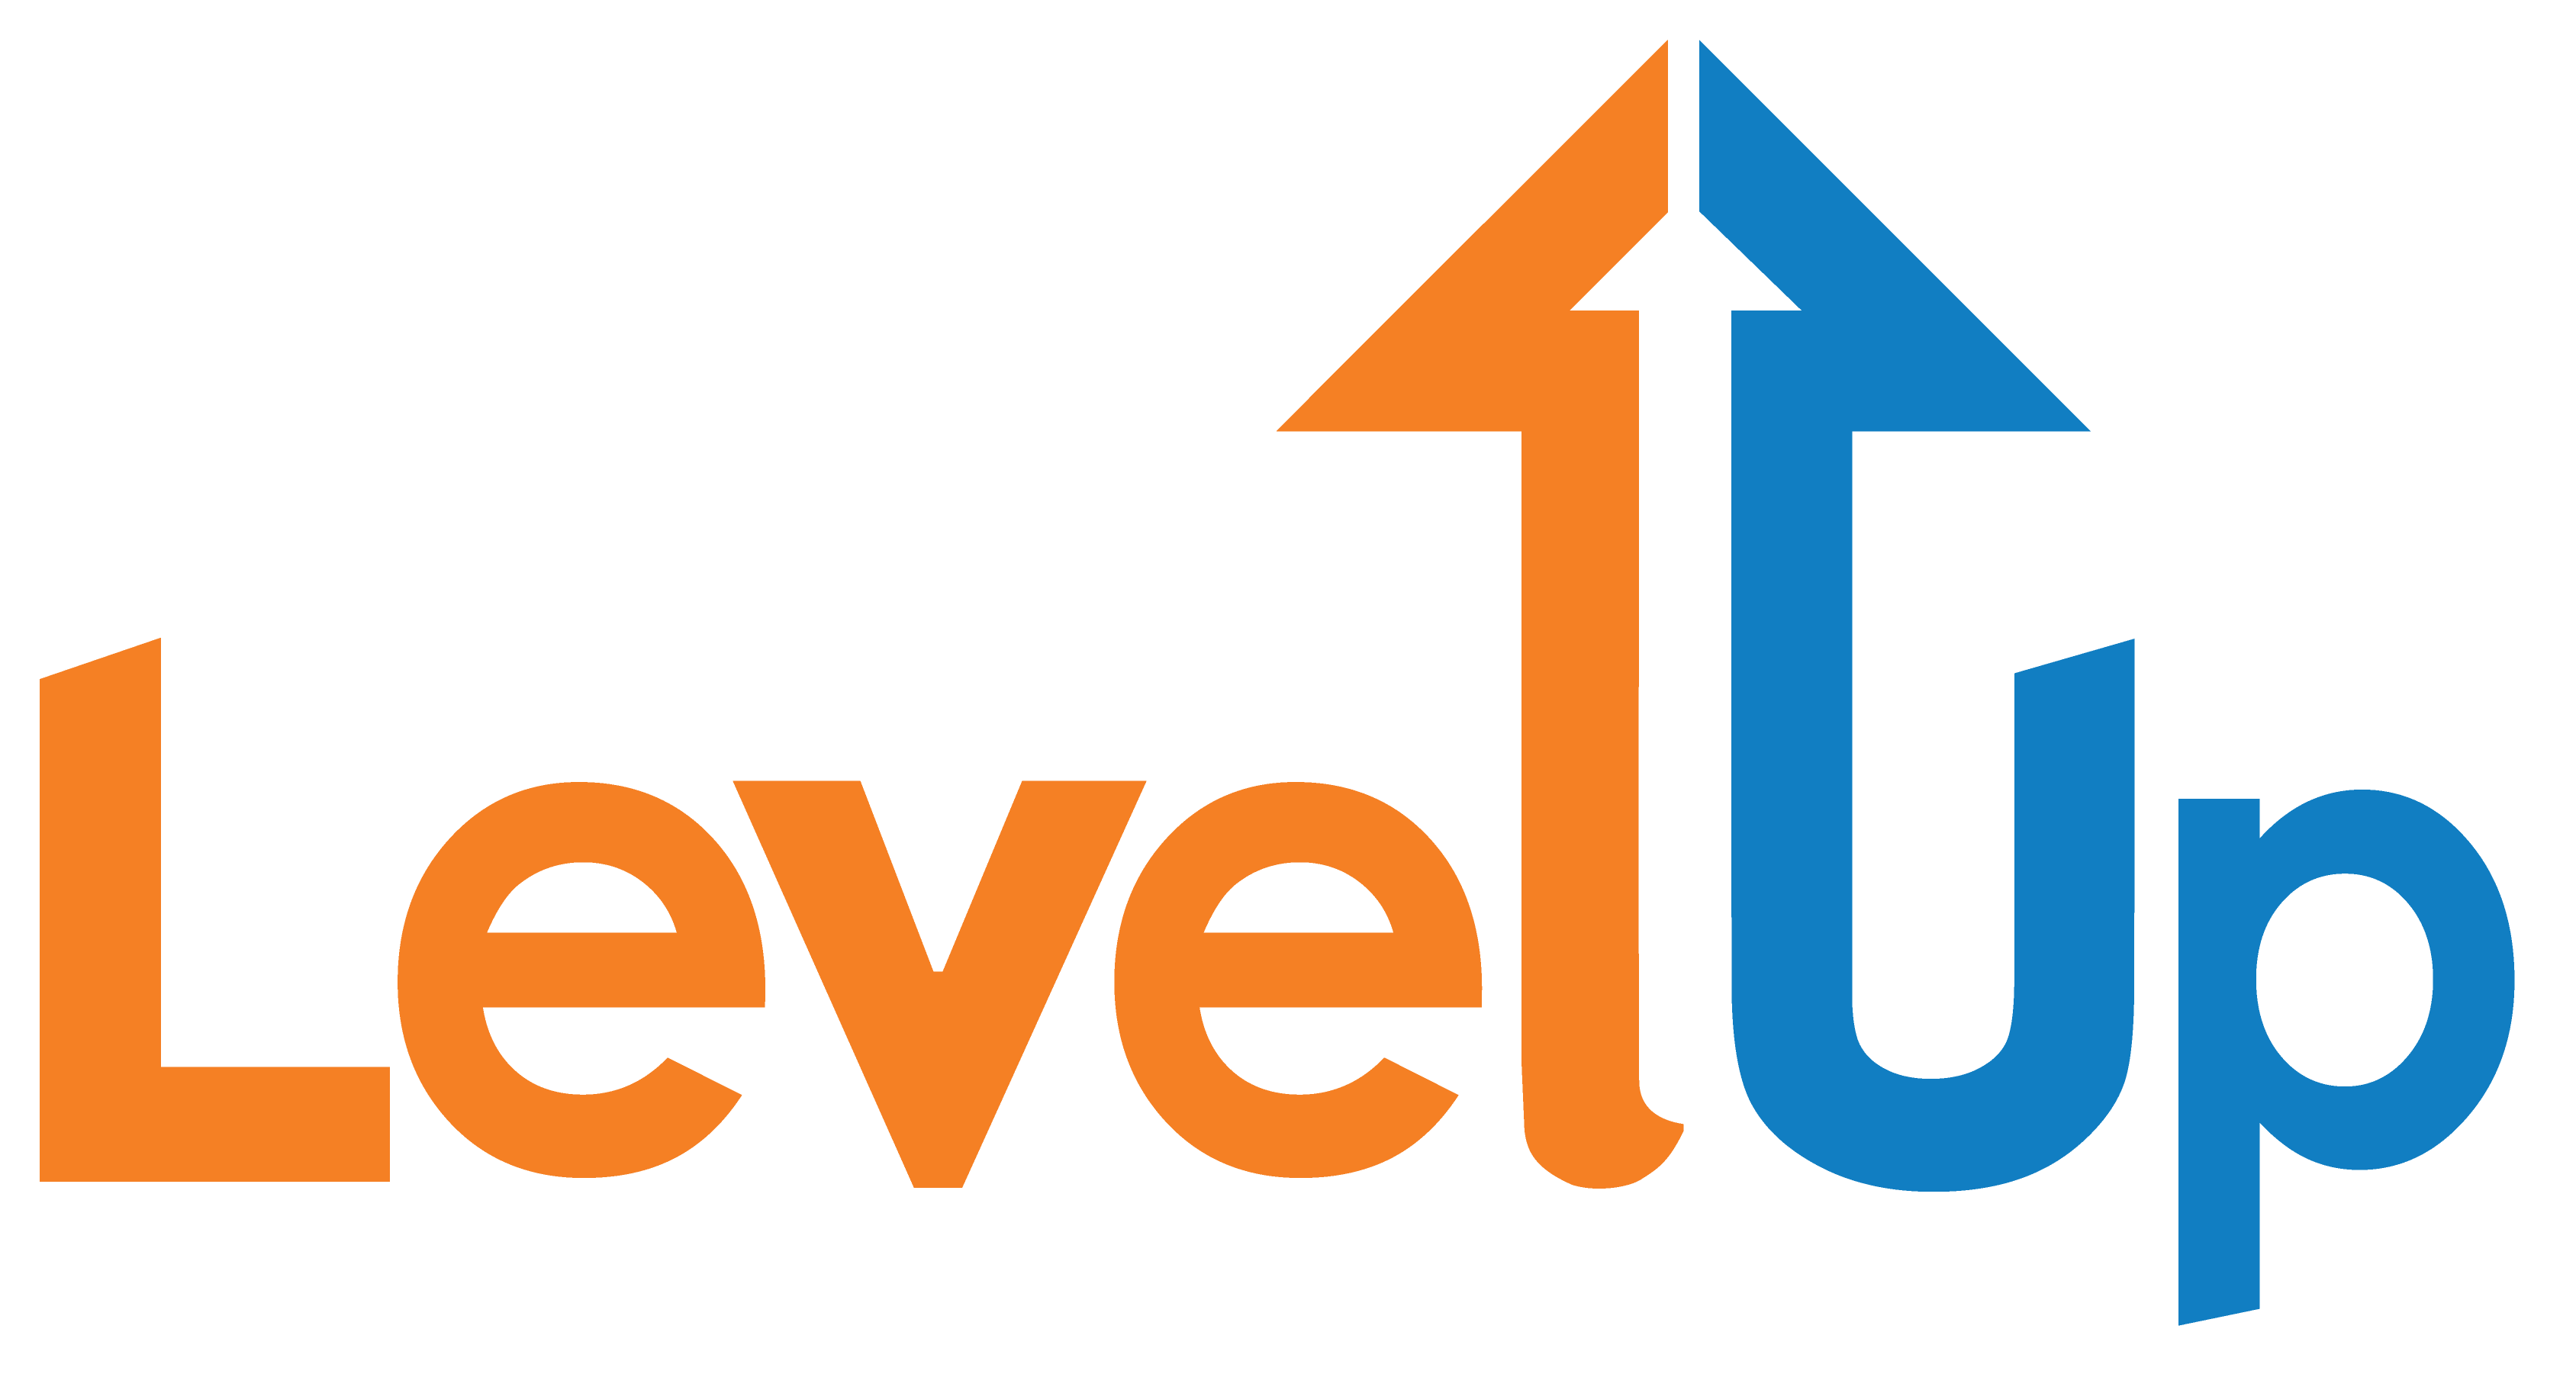 Up логотип. Lvl логотип. Логотип вверх. Level up лого. How to level up